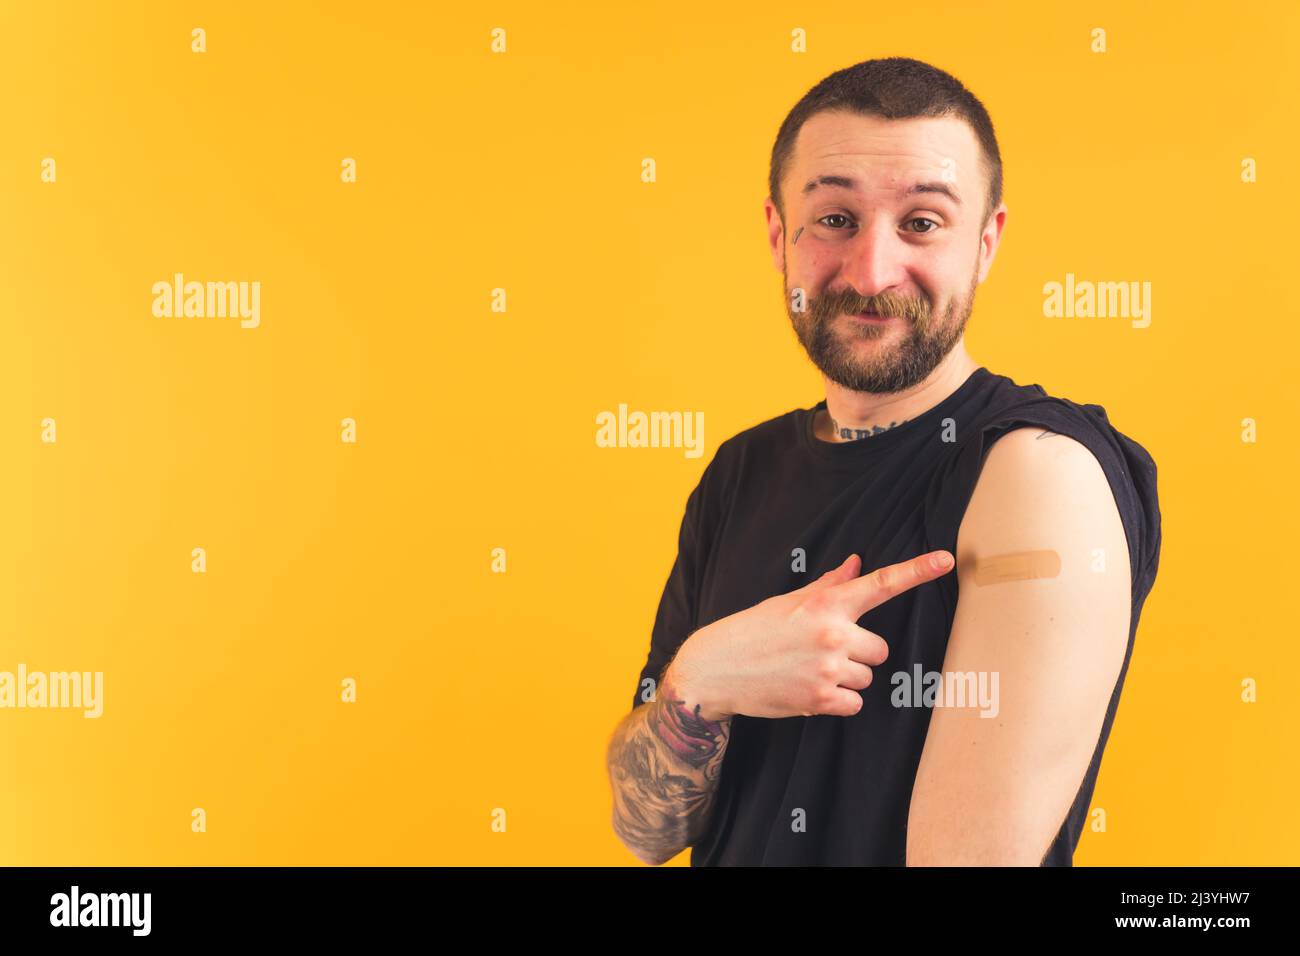 Concept de vaccination. Heureux gangster-comme l'homme caucasien barbu avec des tatouages pointant le doigt vers son bras couvert de patch après la vaccination. Photo de haute qualité Banque D'Images